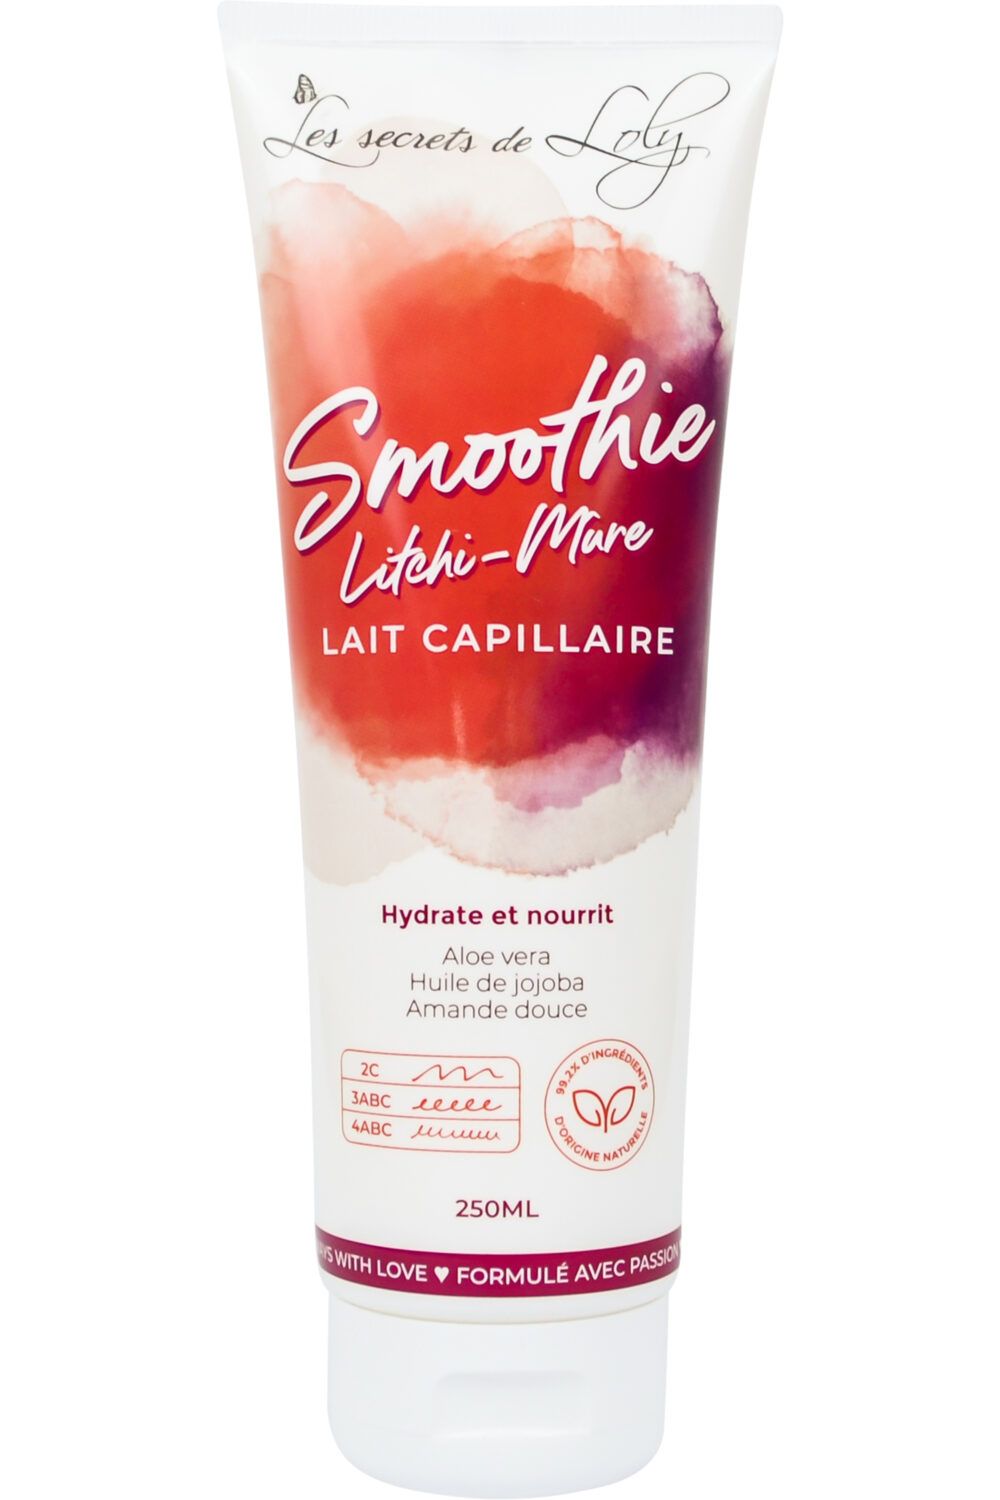 Les Secrets de Loly - Lait capilaire smoothie Litchî-mûre